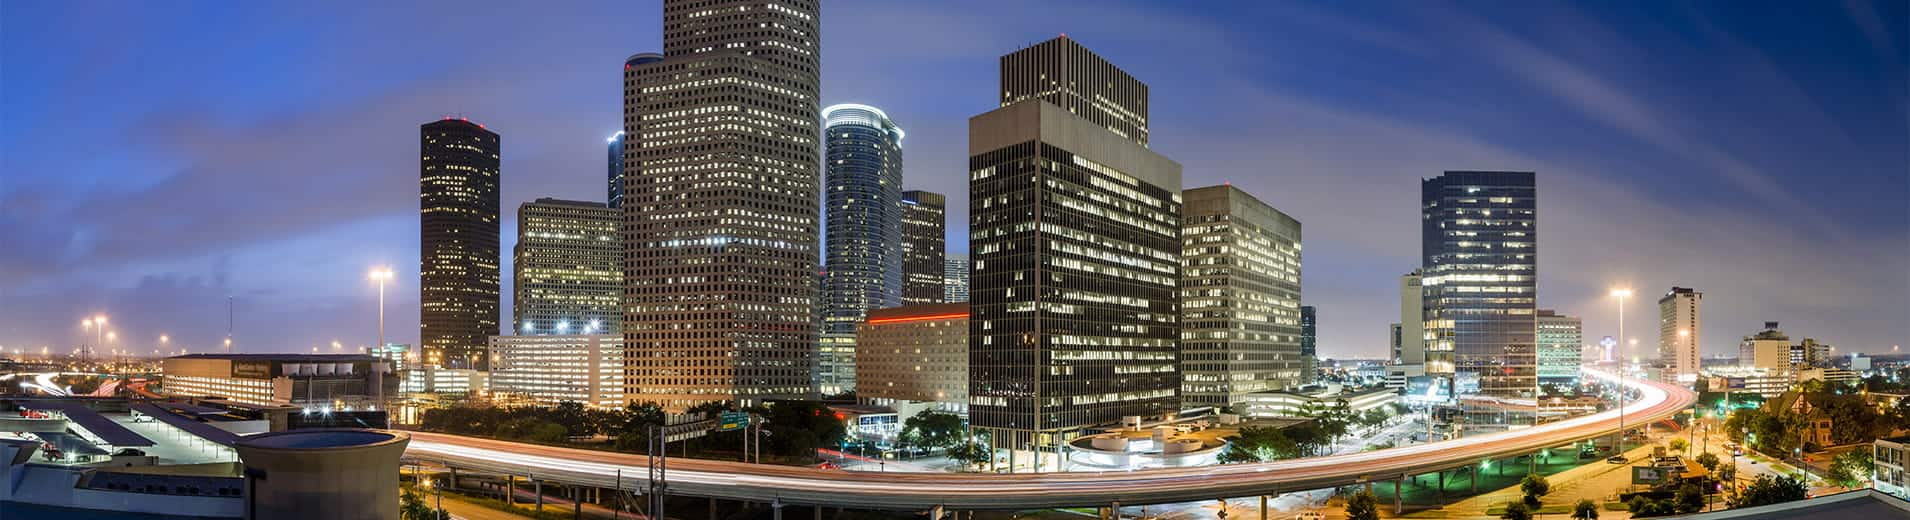 Downtown_Houston_Skyline